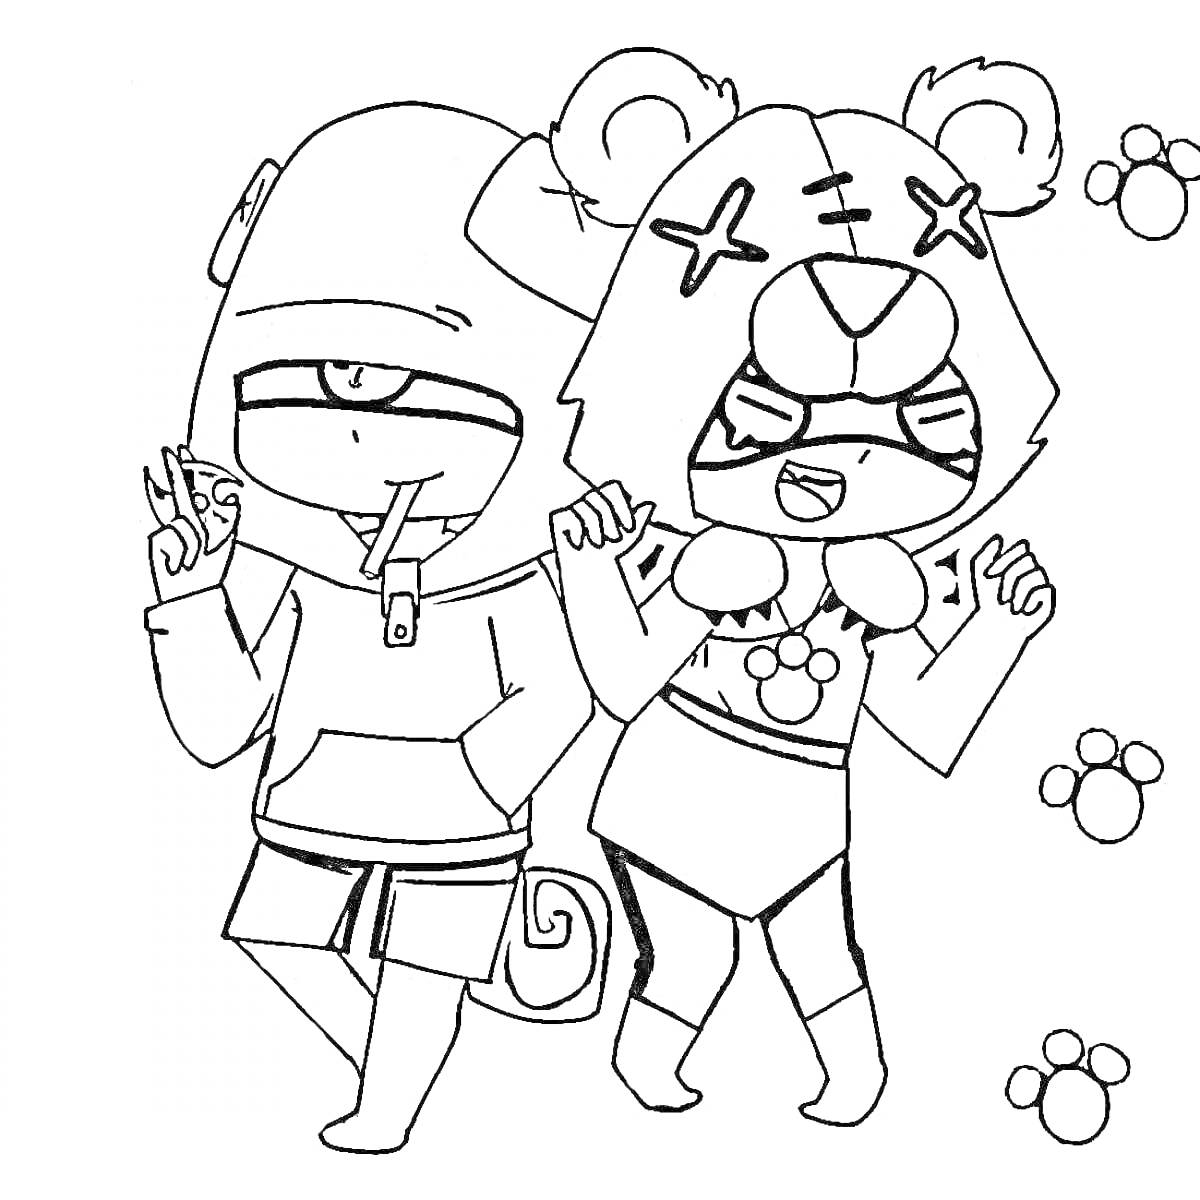 Раскраска Два персонажа в костюмах, один с хвостом и шапкой с одним глазом, другой в костюме медведя с ушами и крестами на глазах, следы лап на фоне